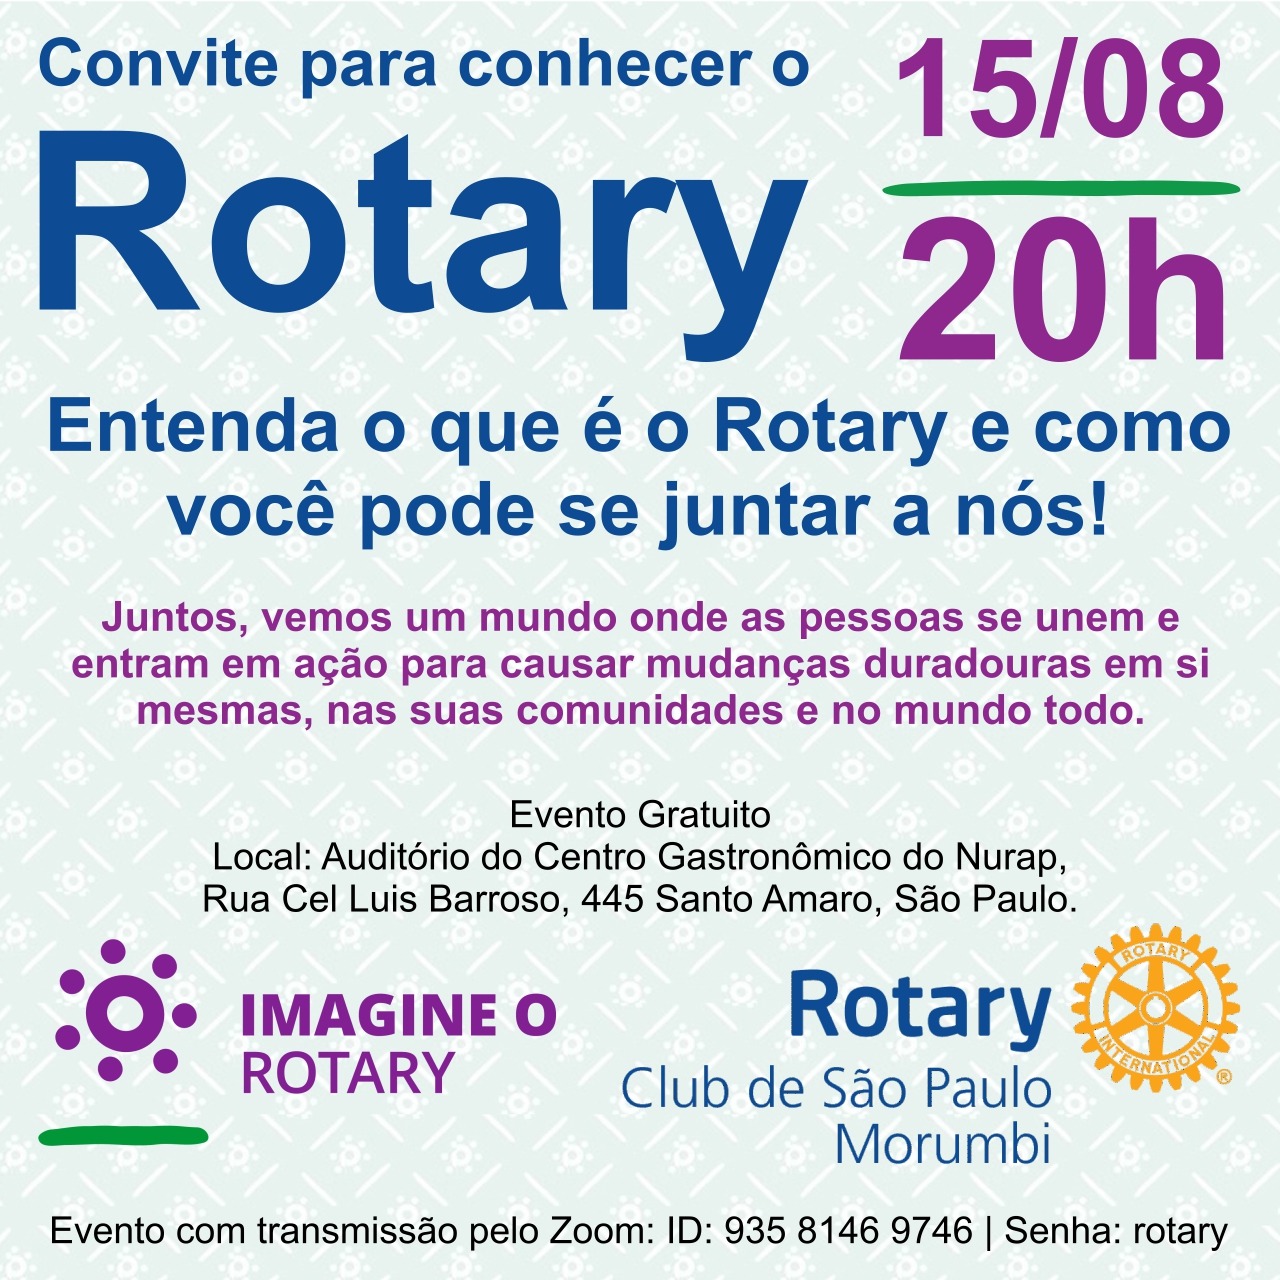 Convite para reunião de apresentação do Rotary Morumbi em 15/08/2022